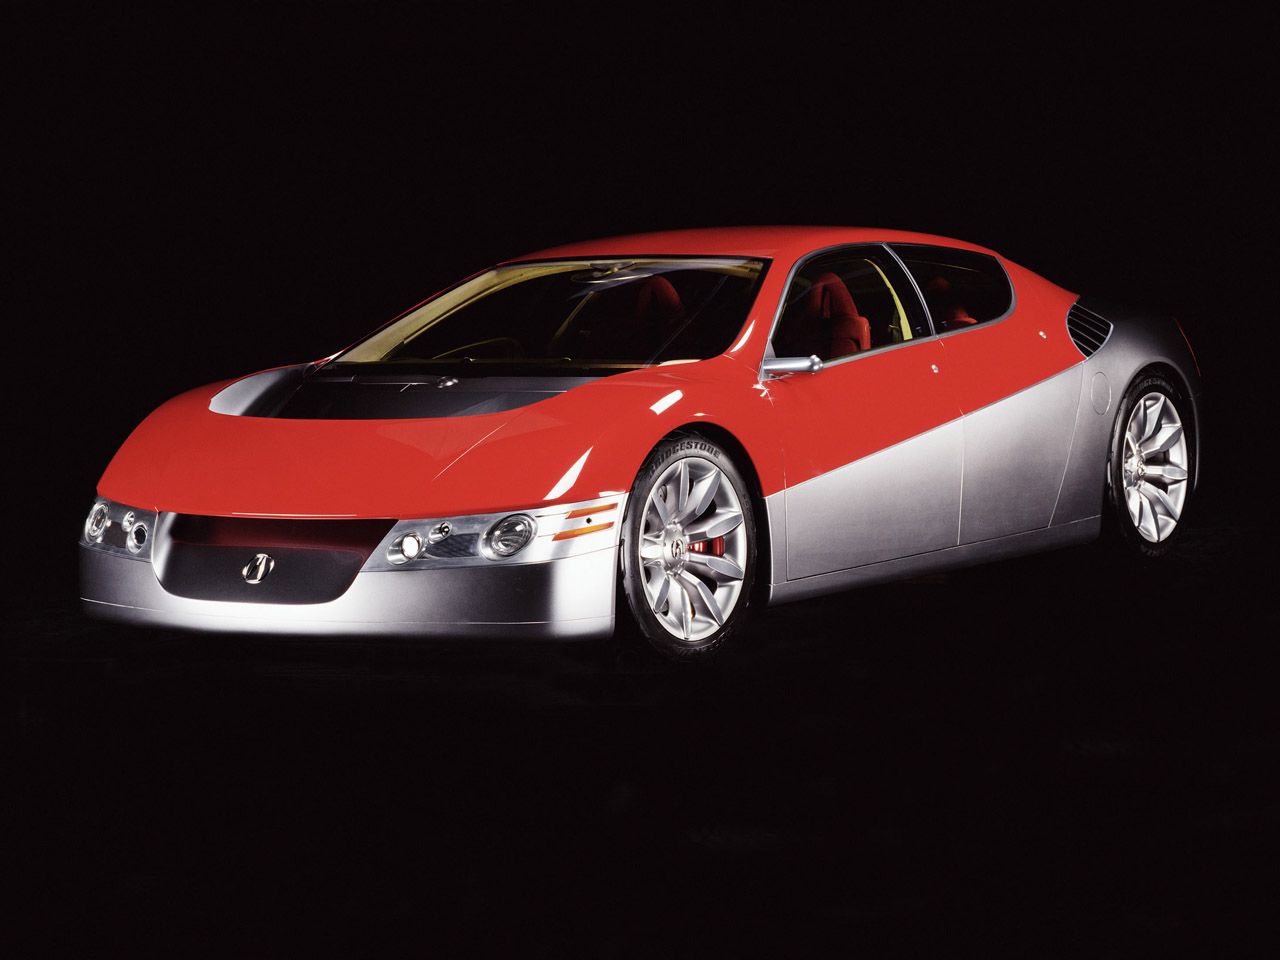 2002 Acura D-NX